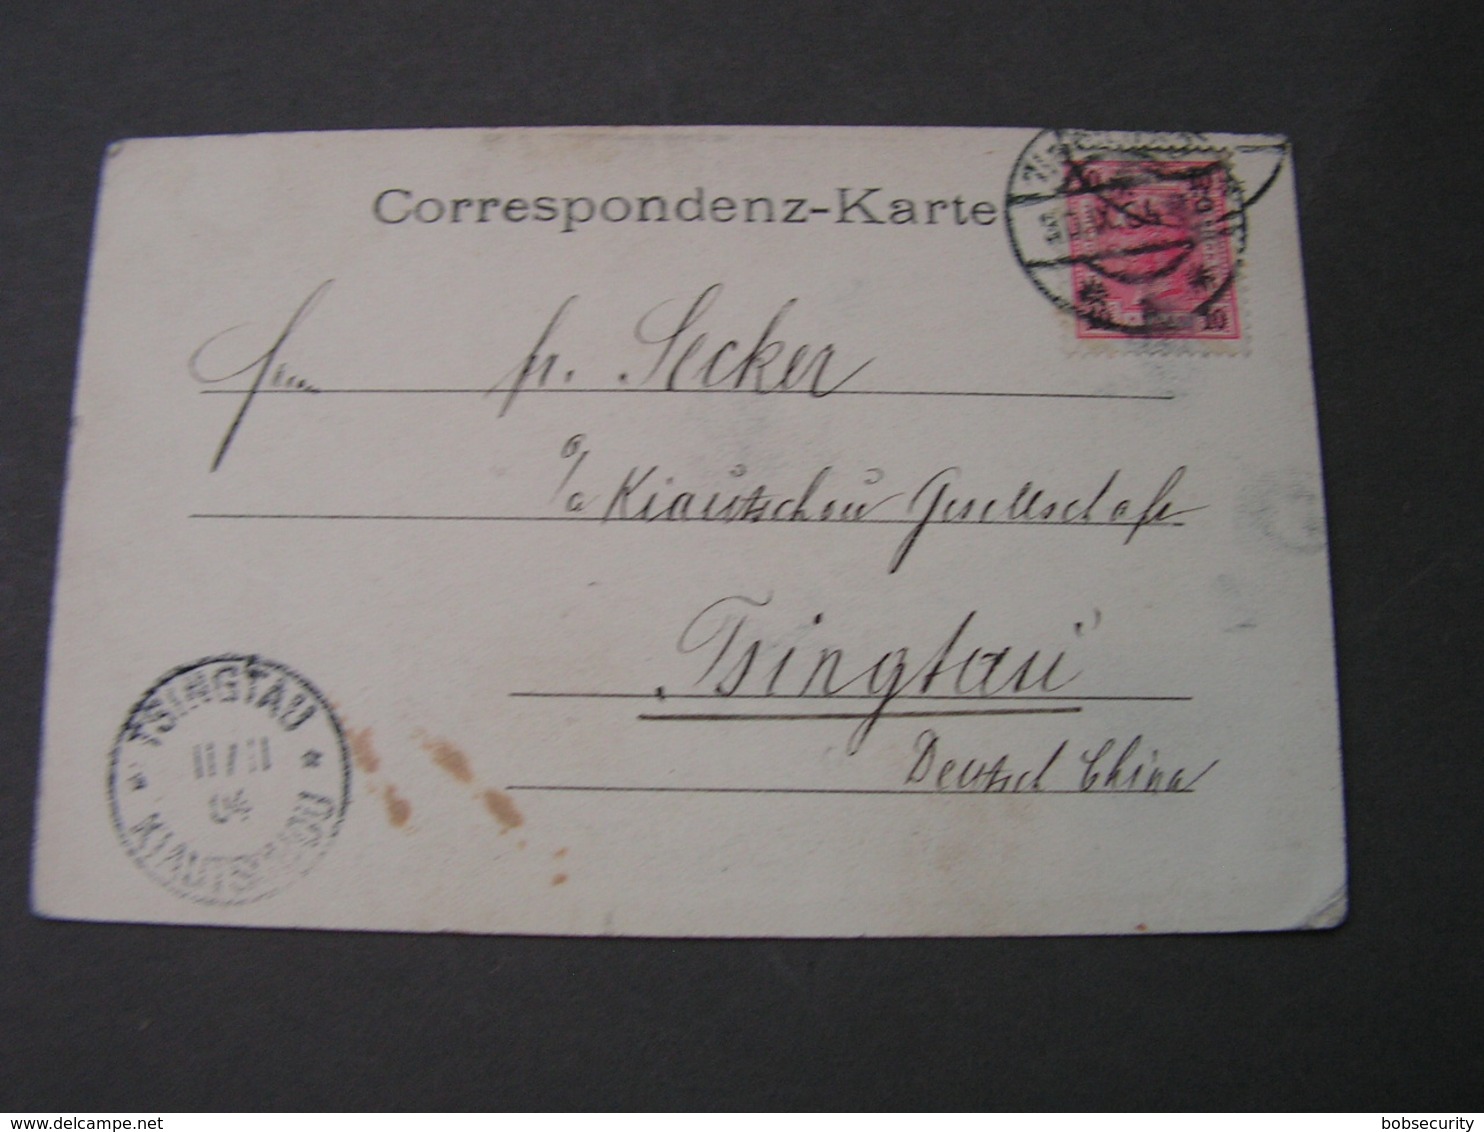 Wien Hoher Markt Geschäfte Nach Deutsch China Kiatschou Ankunft  1904 - Lettres & Documents